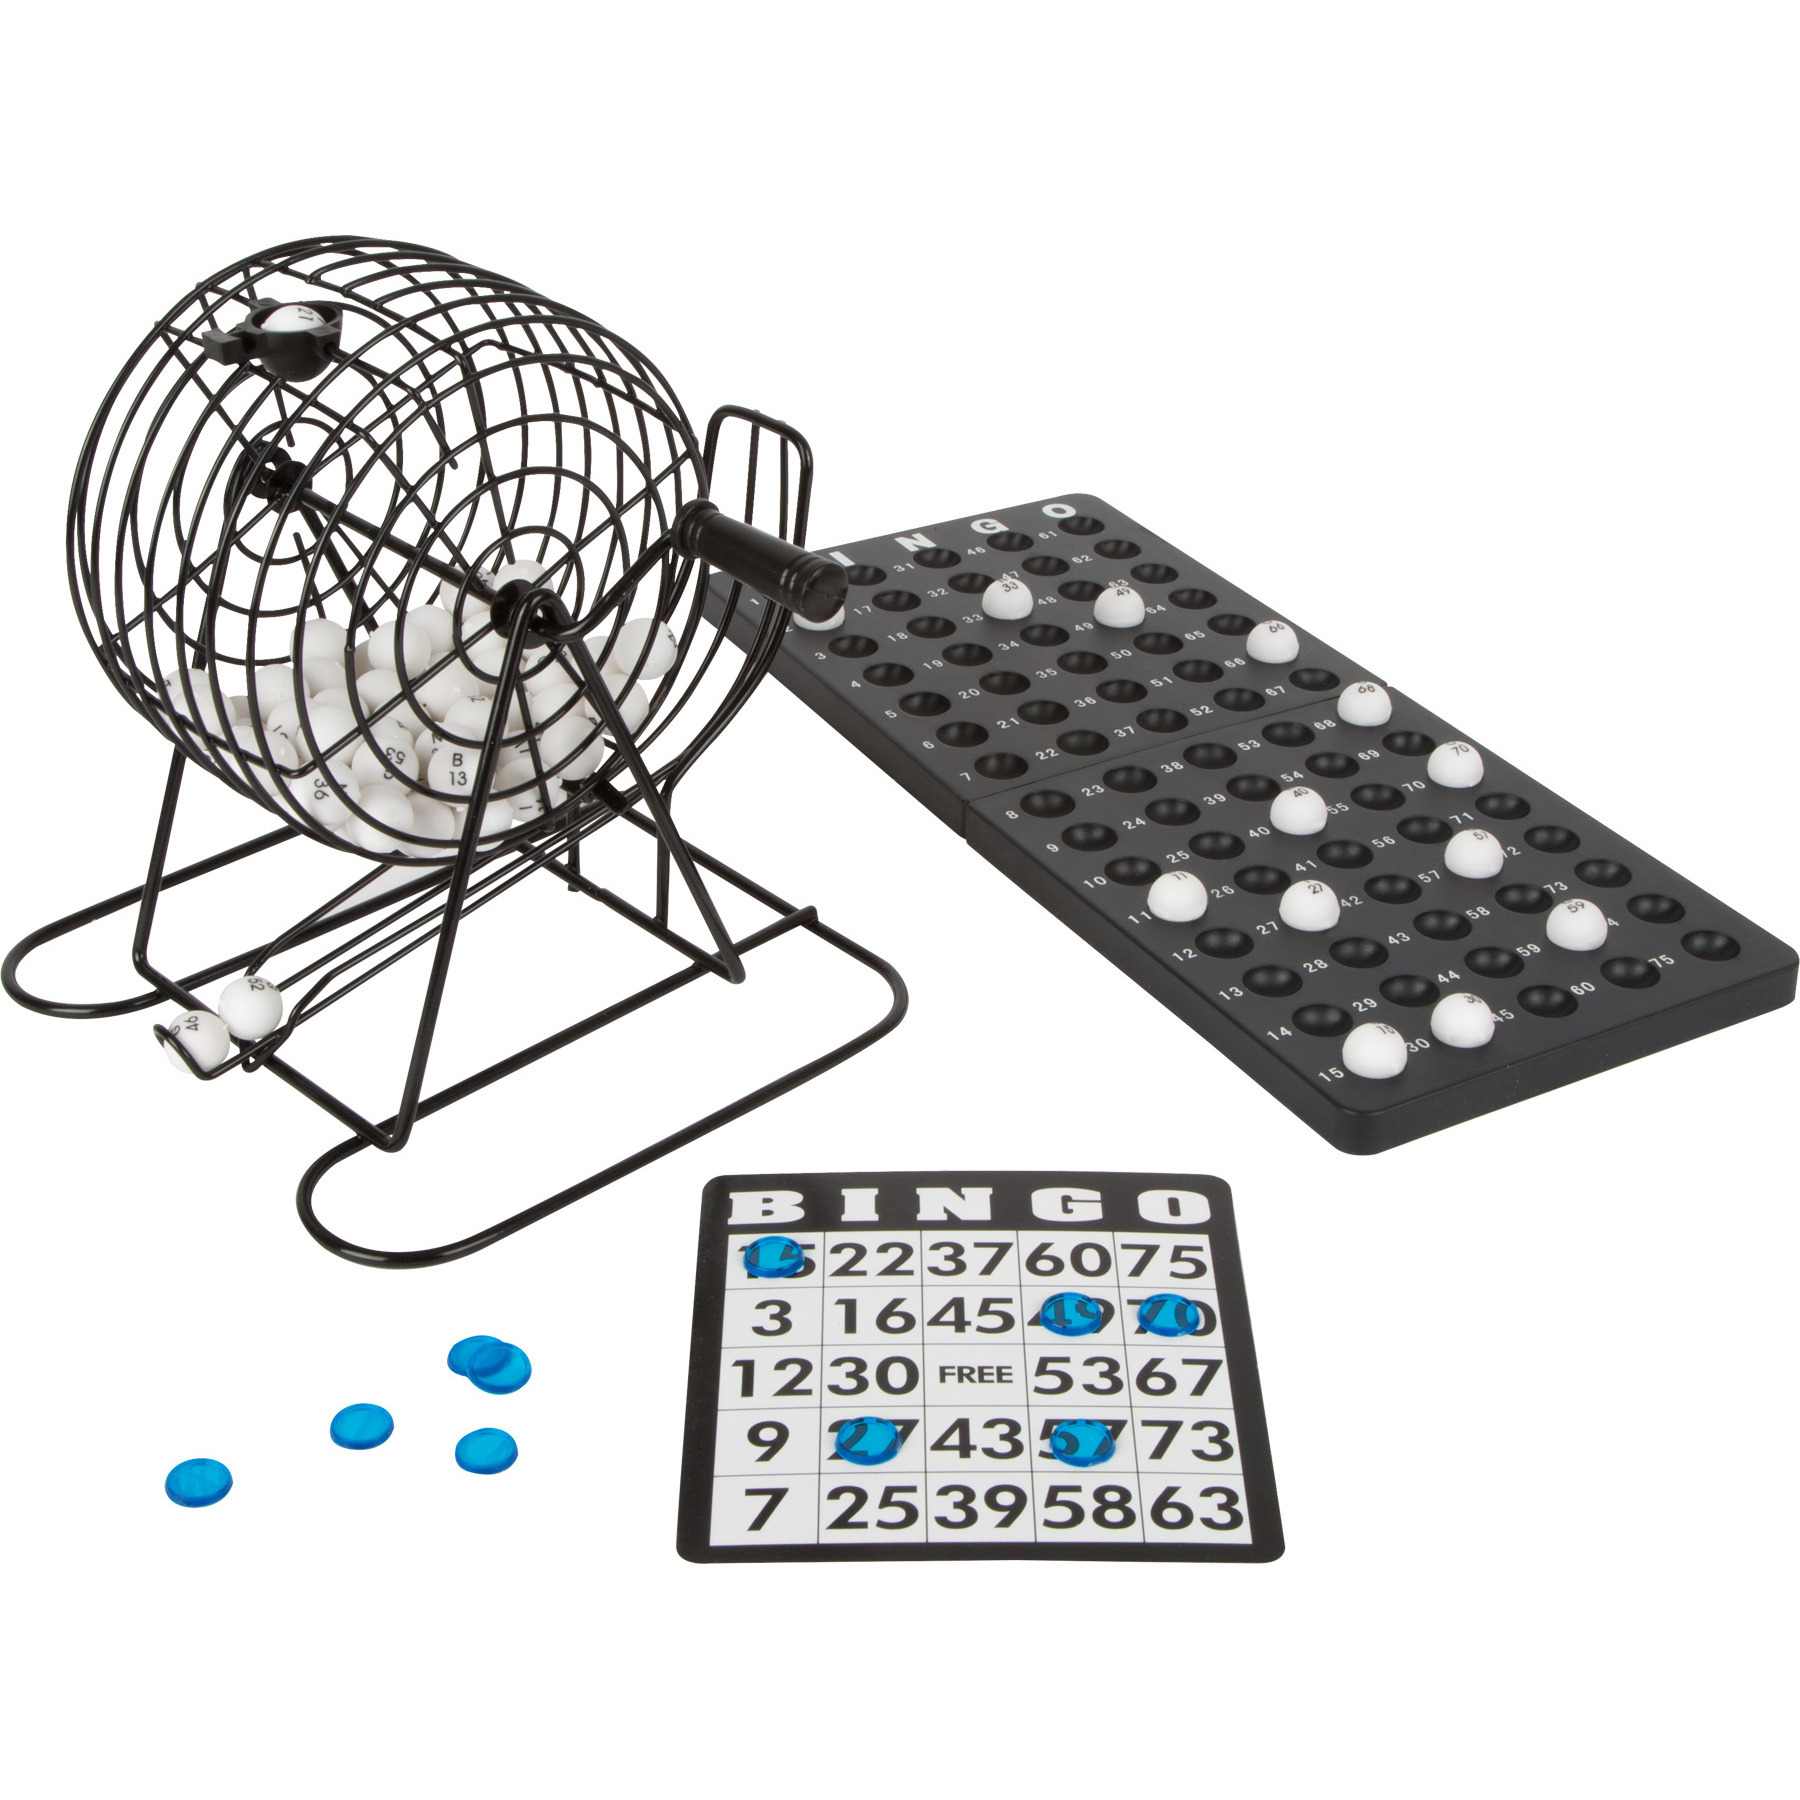 Bingospel zwart-wit 1-75 met bingomolen en 18 bingokaarten